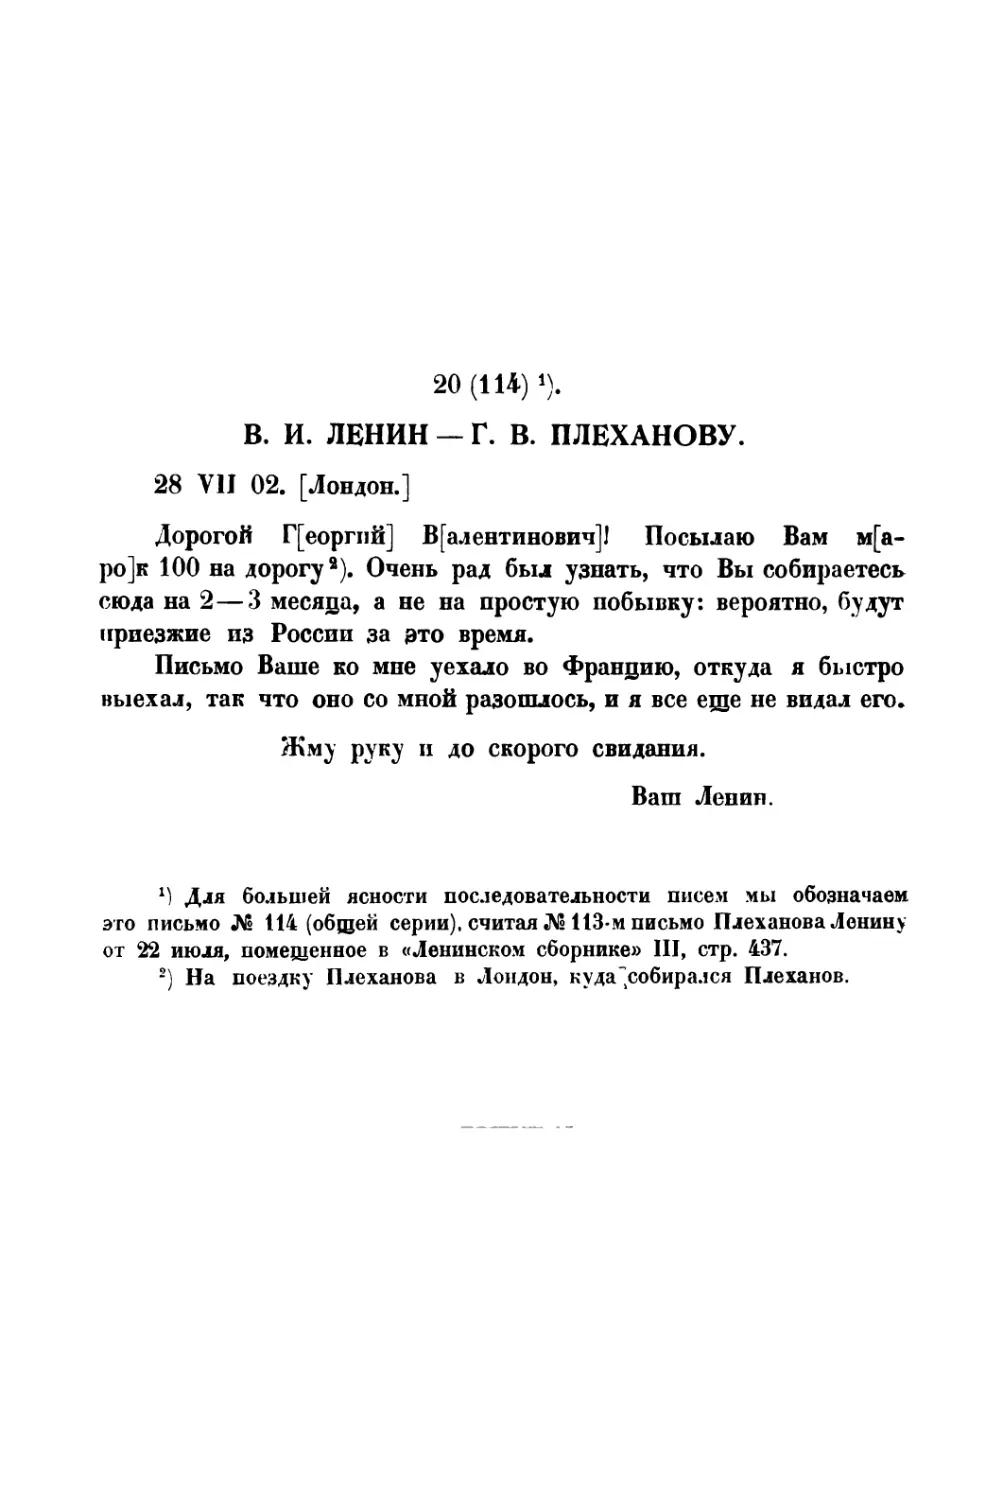 20. В. И. Ленин — Г. В. Плеханову от 28 VII 1902 г